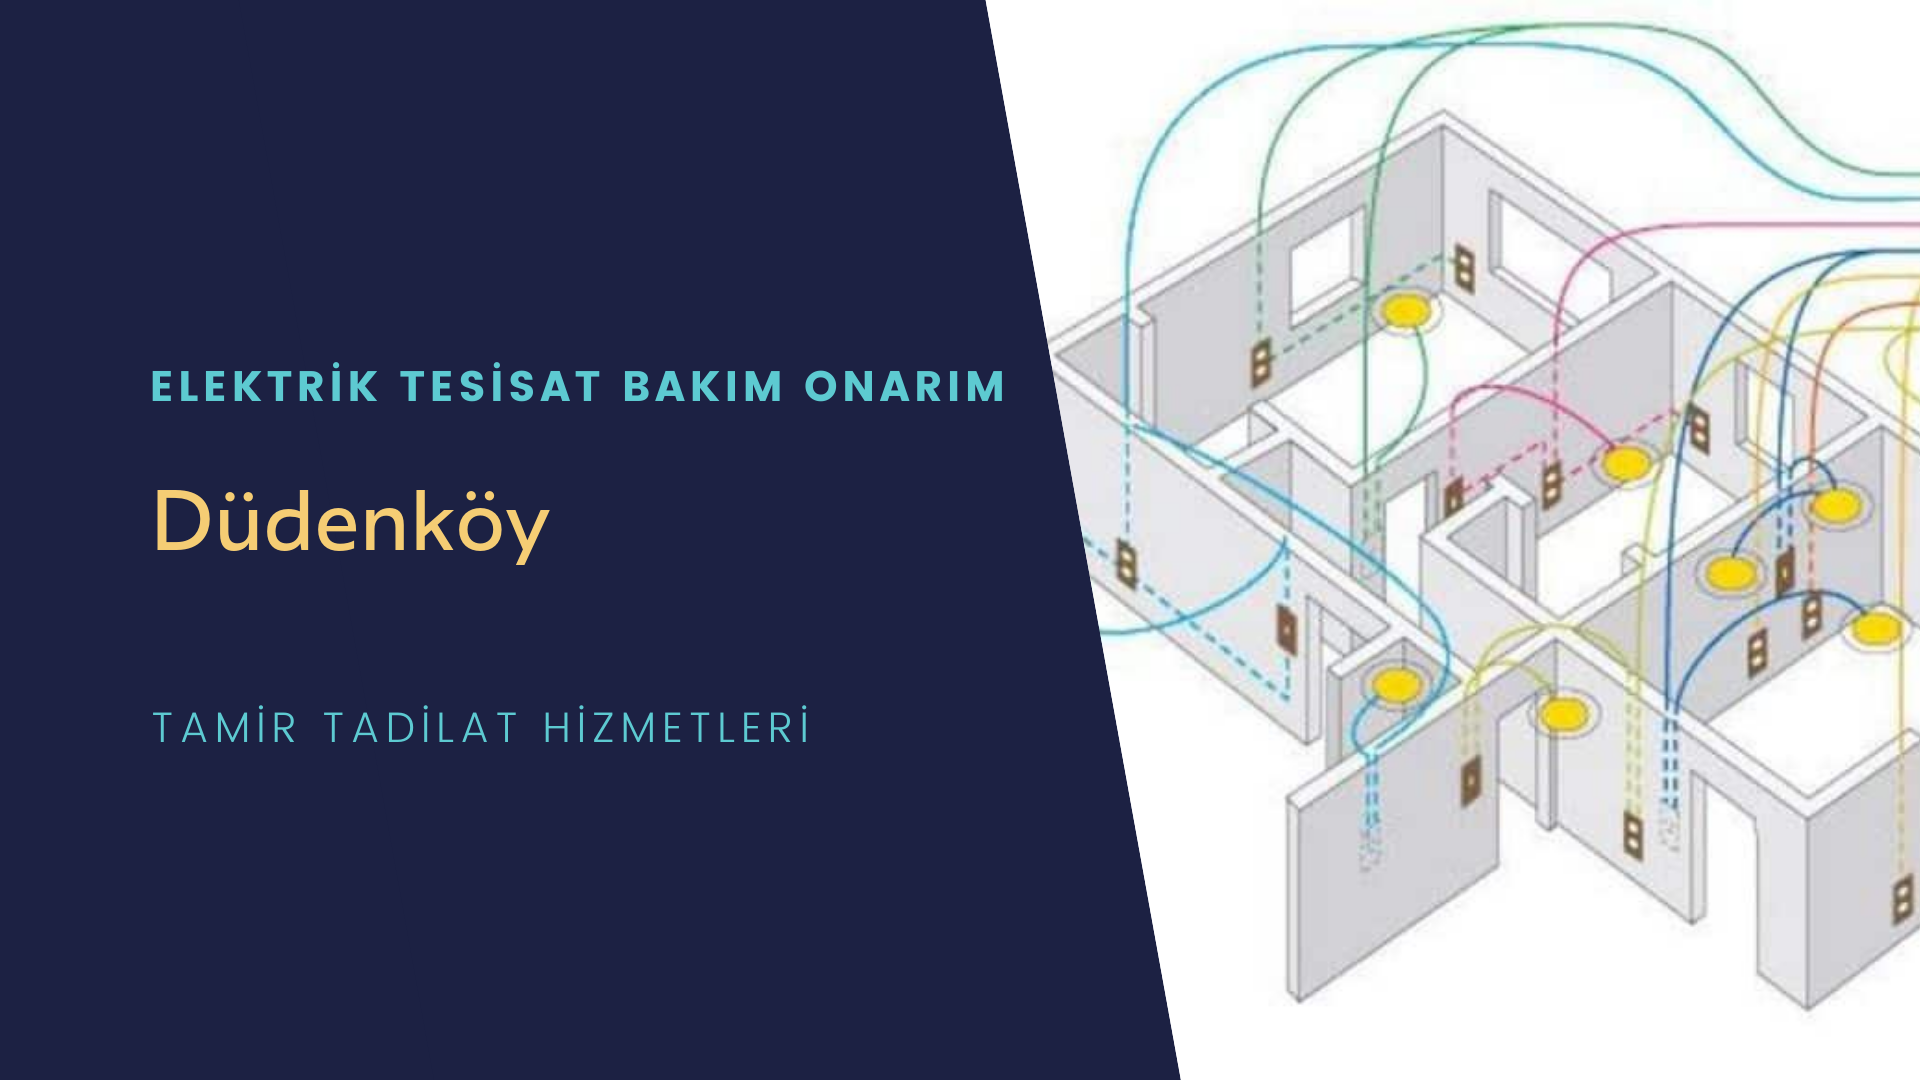 Düdenköy'de elektrik tesisatı ustalarımı arıyorsunuz doğru adrestenizi Düdenköy elektrik tesisatı ustalarımız 7/24 sizlere hizmet vermekten mutluluk duyar.